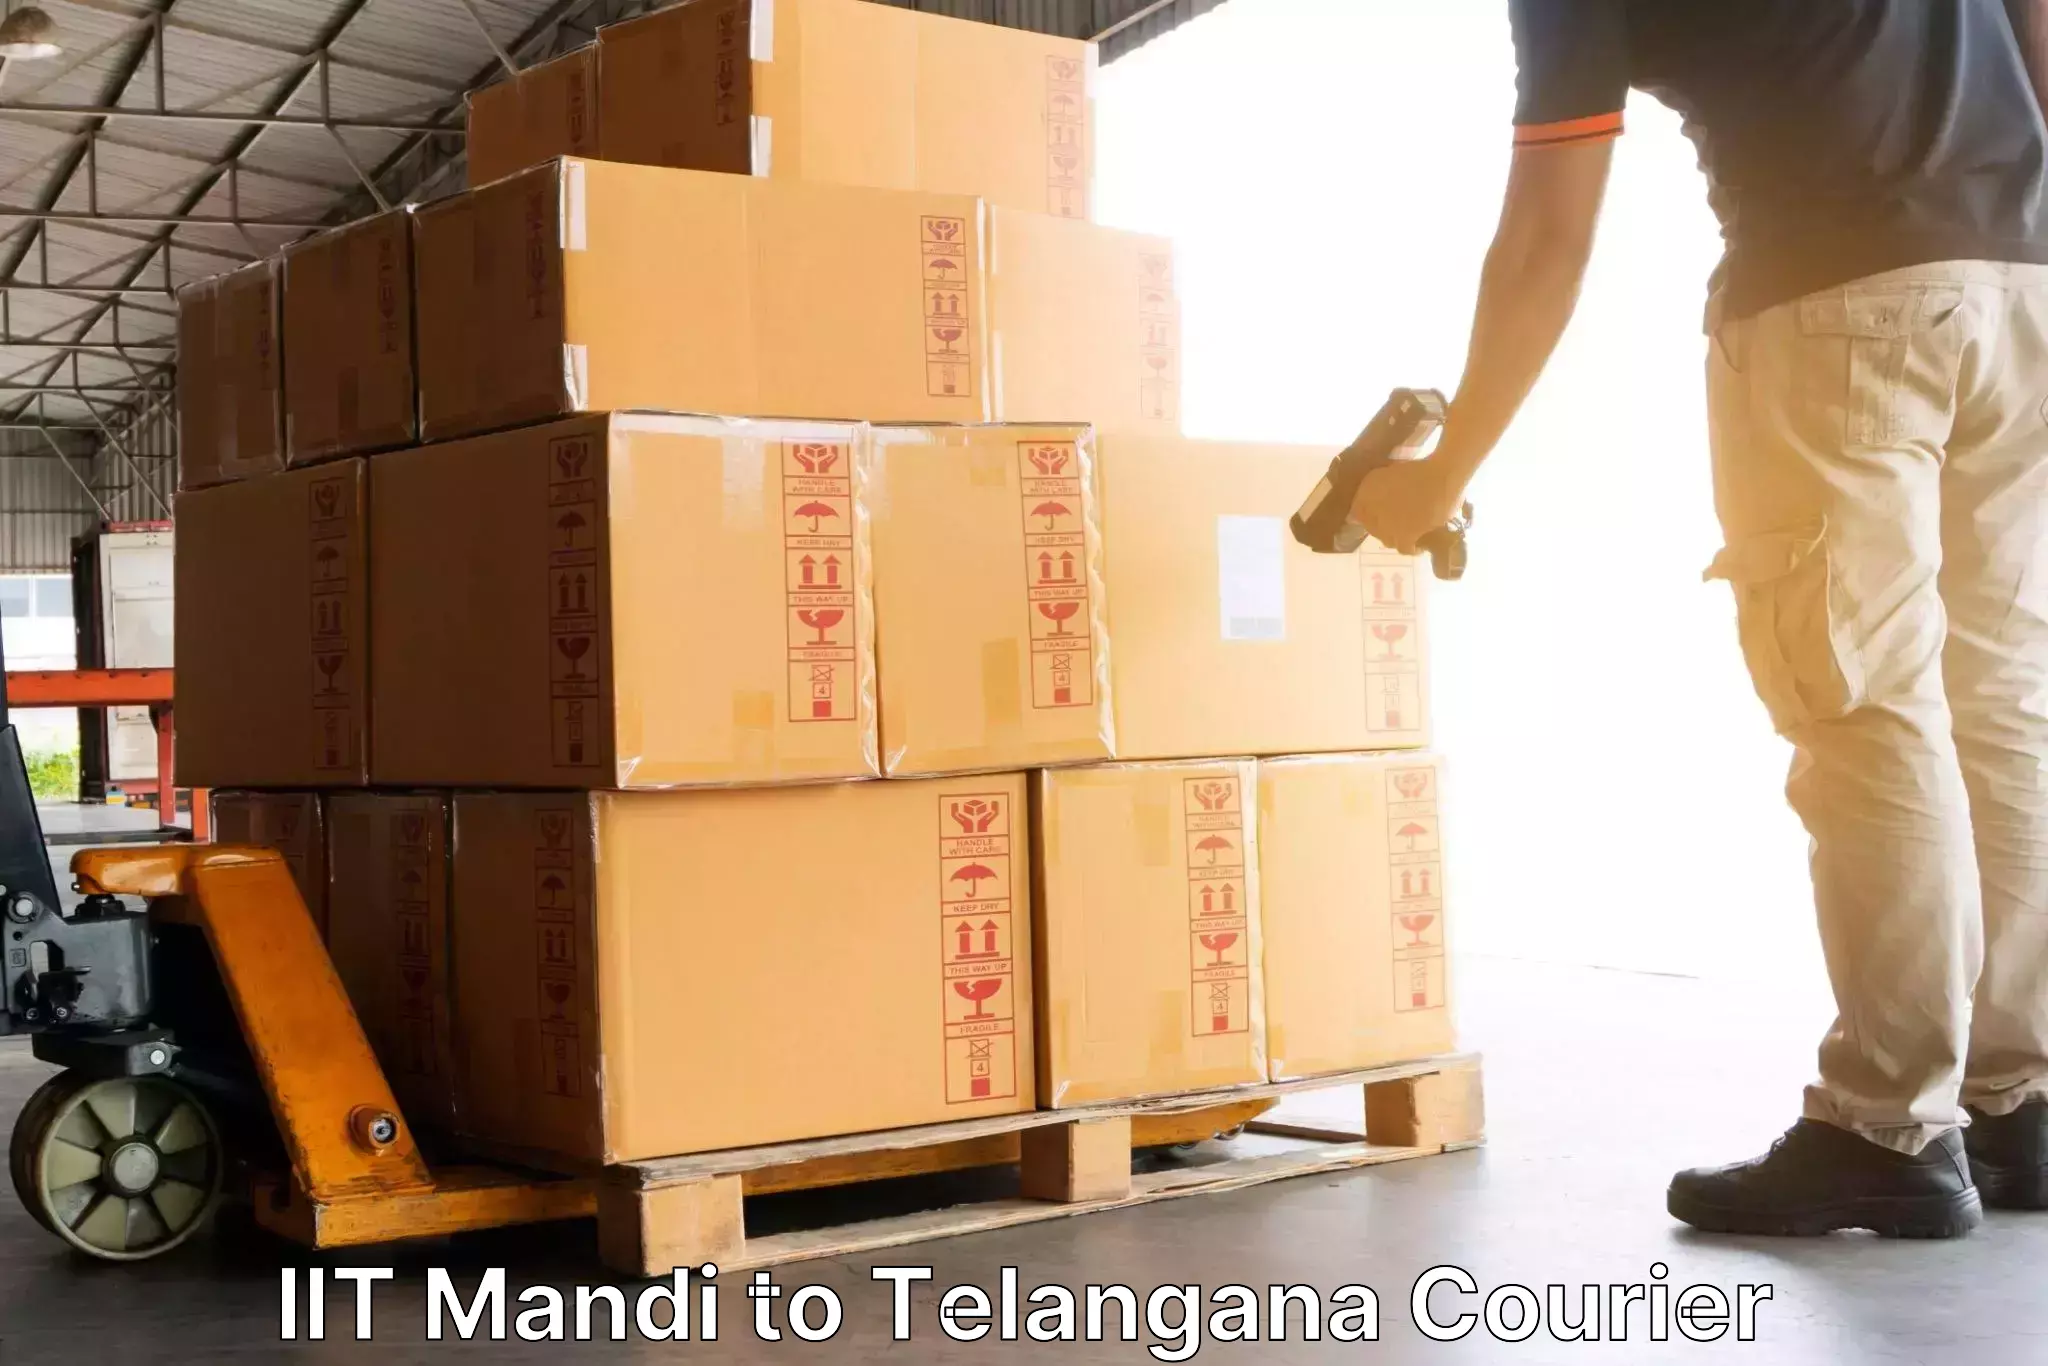 Reliable logistics providers IIT Mandi to Zahirabad